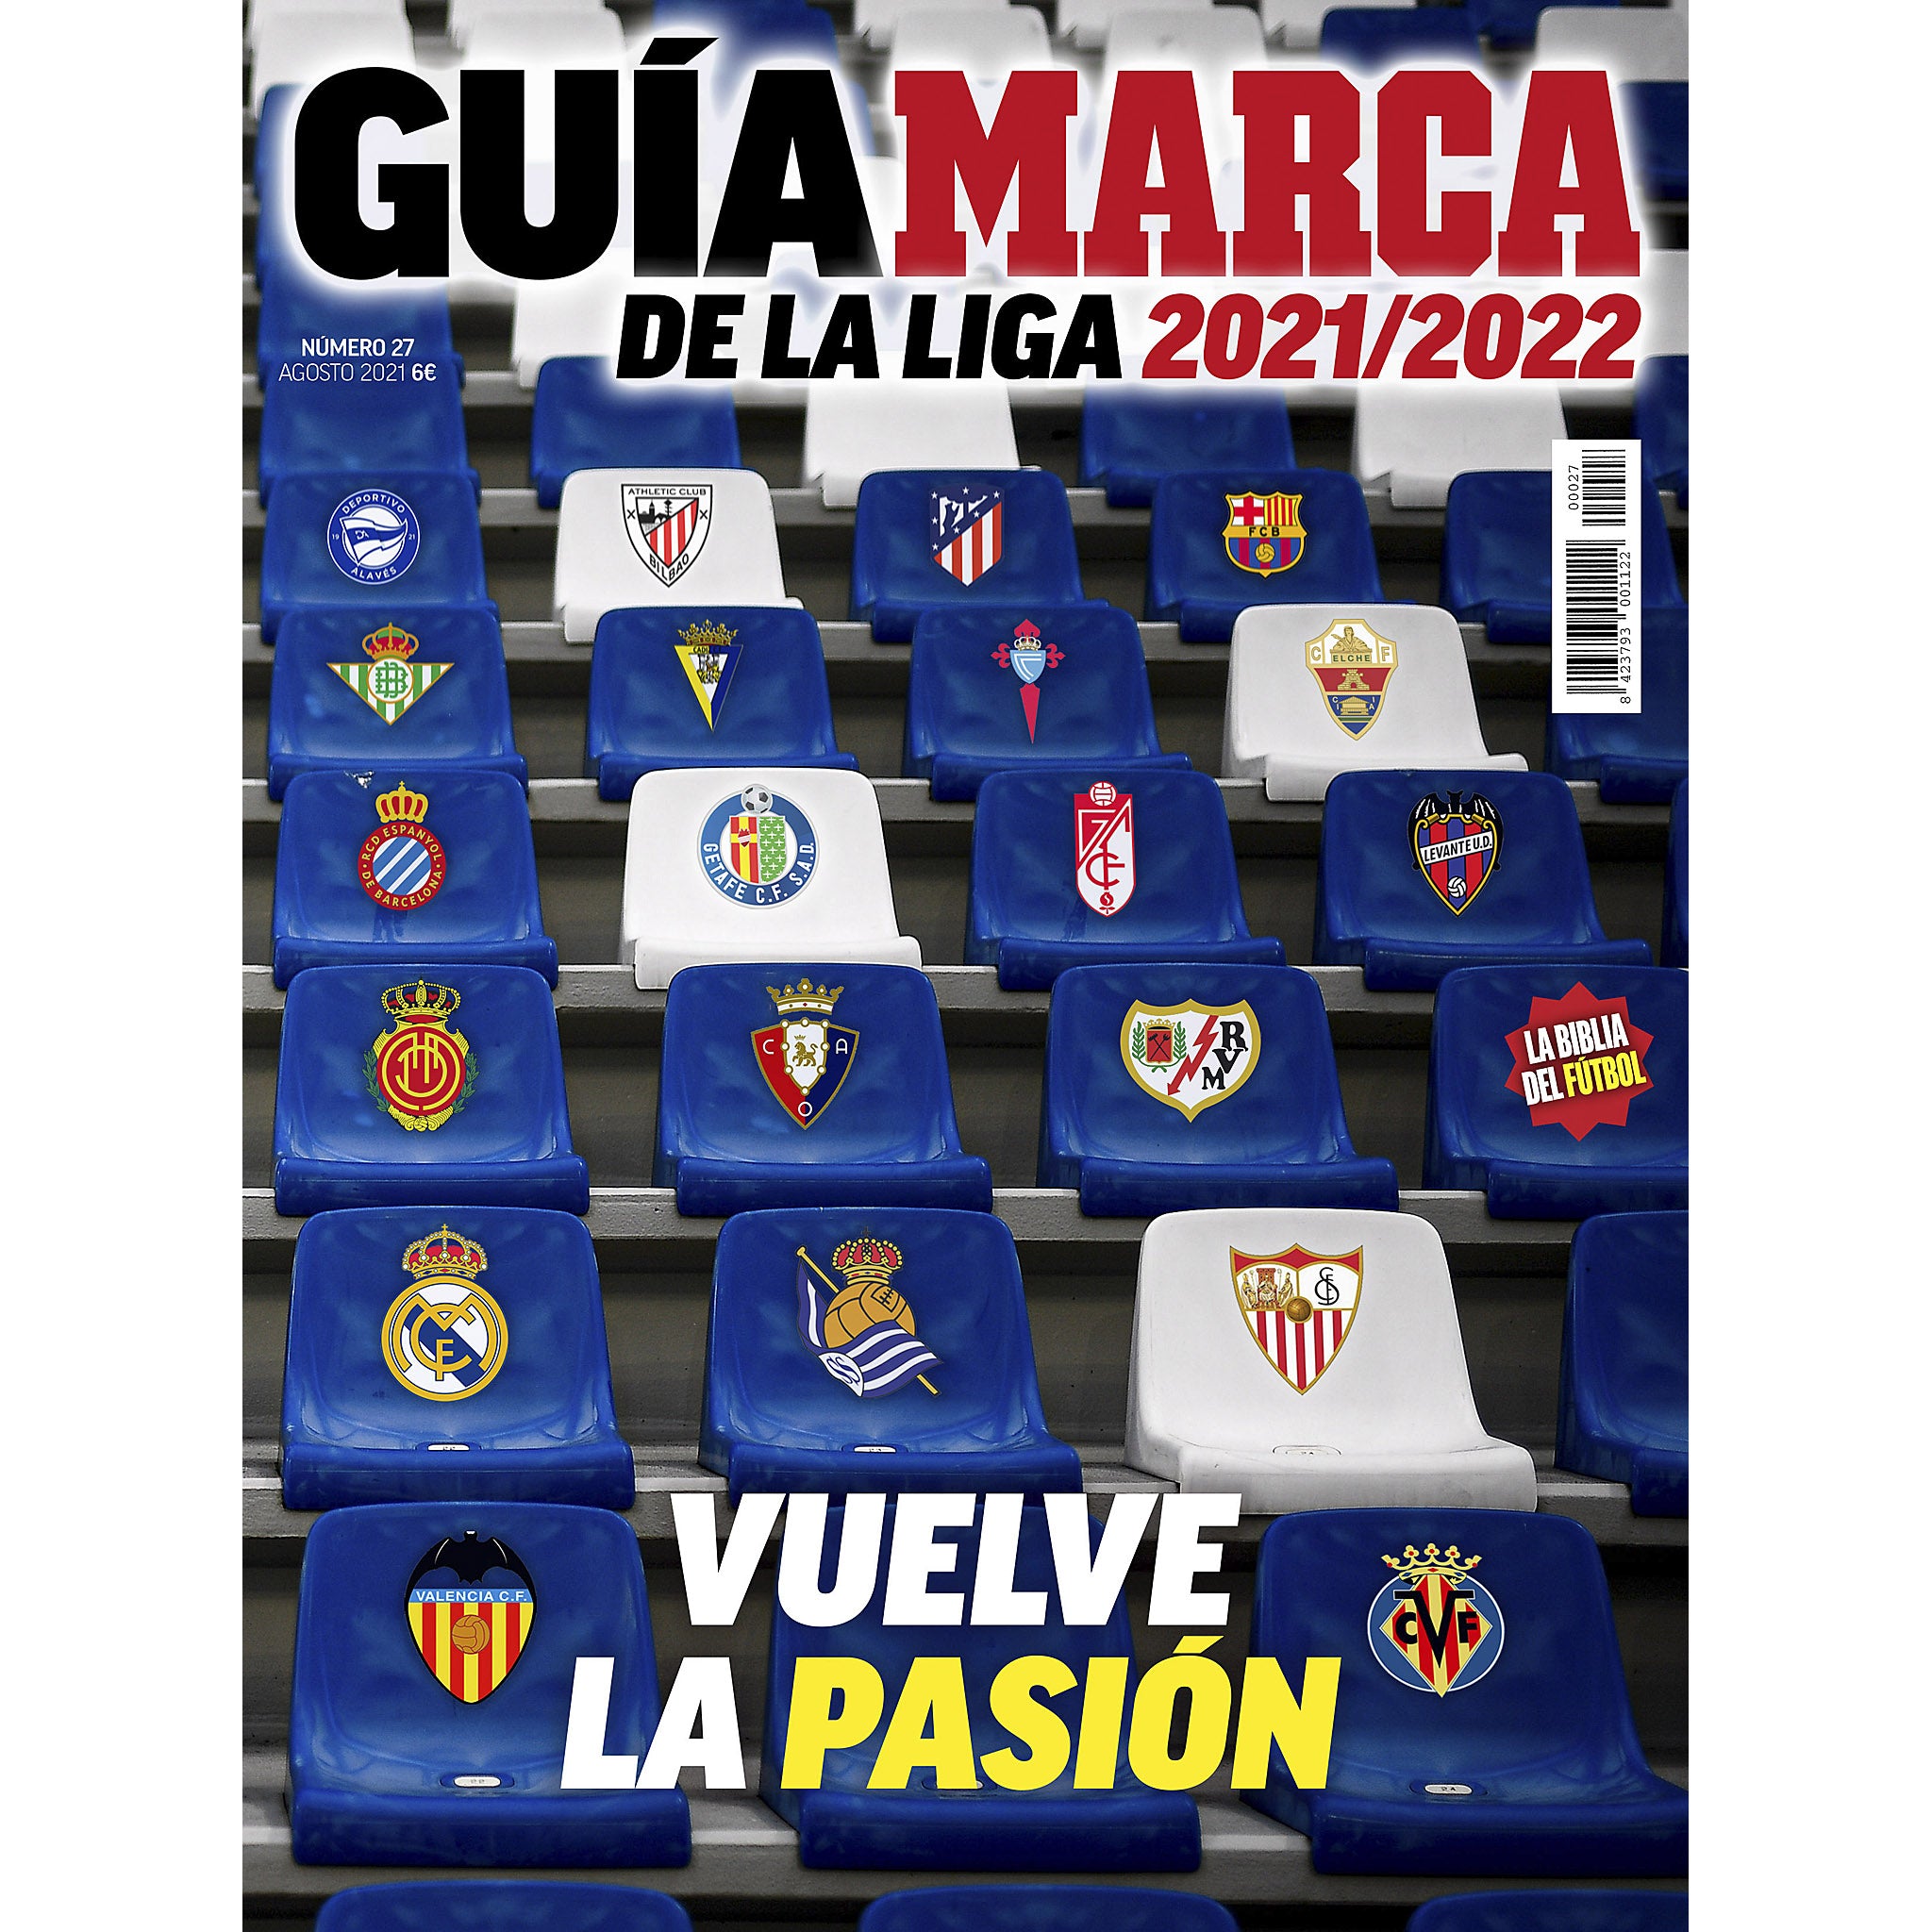 Marca Guia de La Liga 2021/2022 (Spain Season Preview)